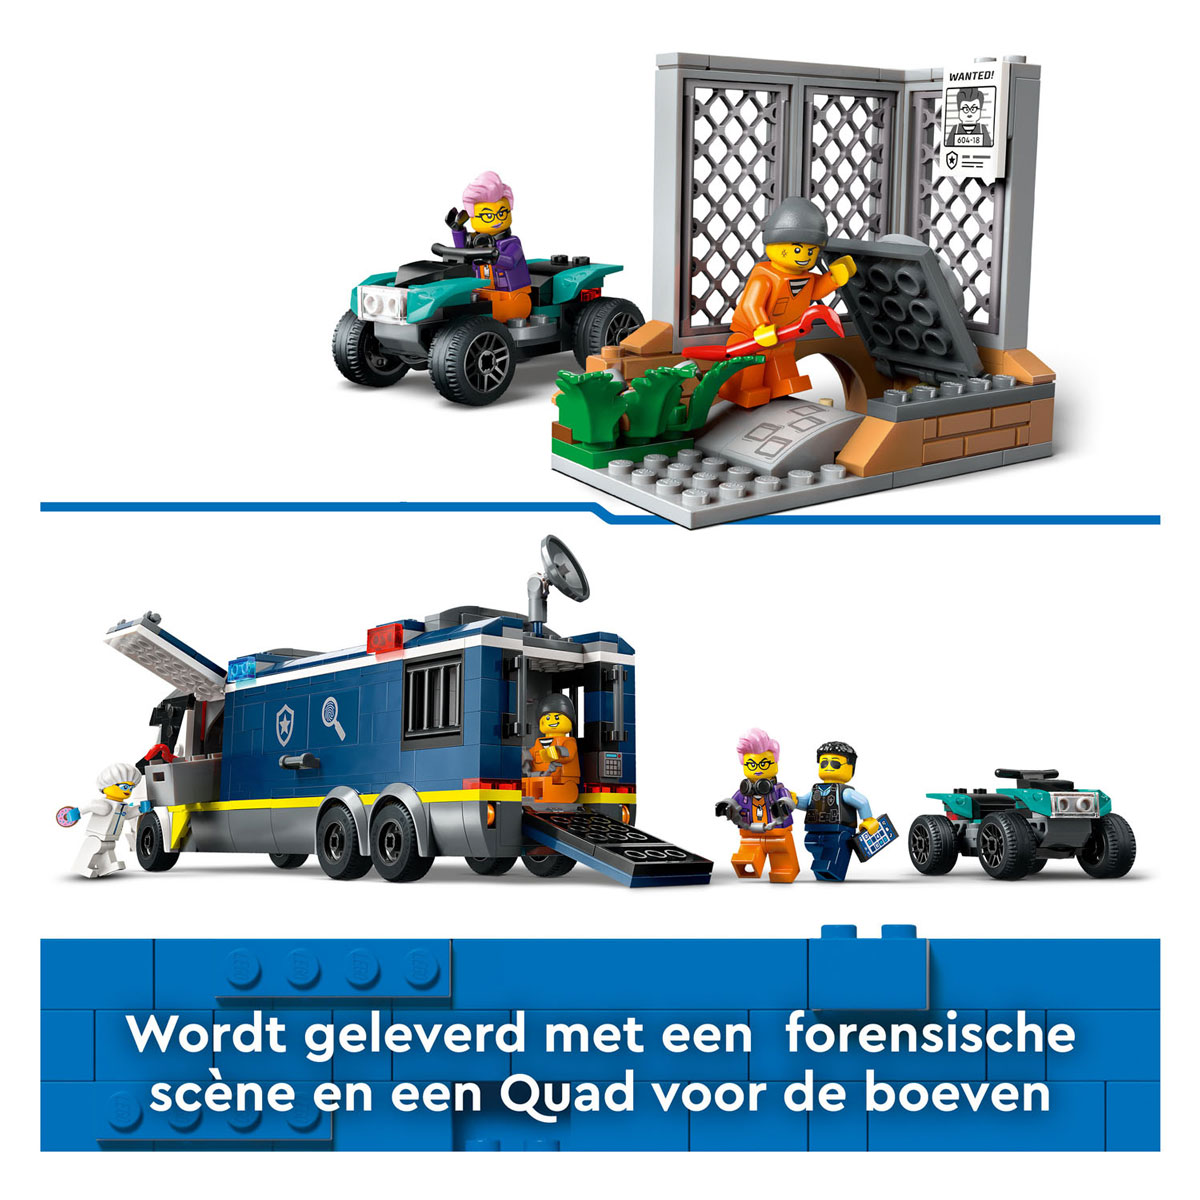 LEGO City 60418 Polizeilabor im Lastwagen